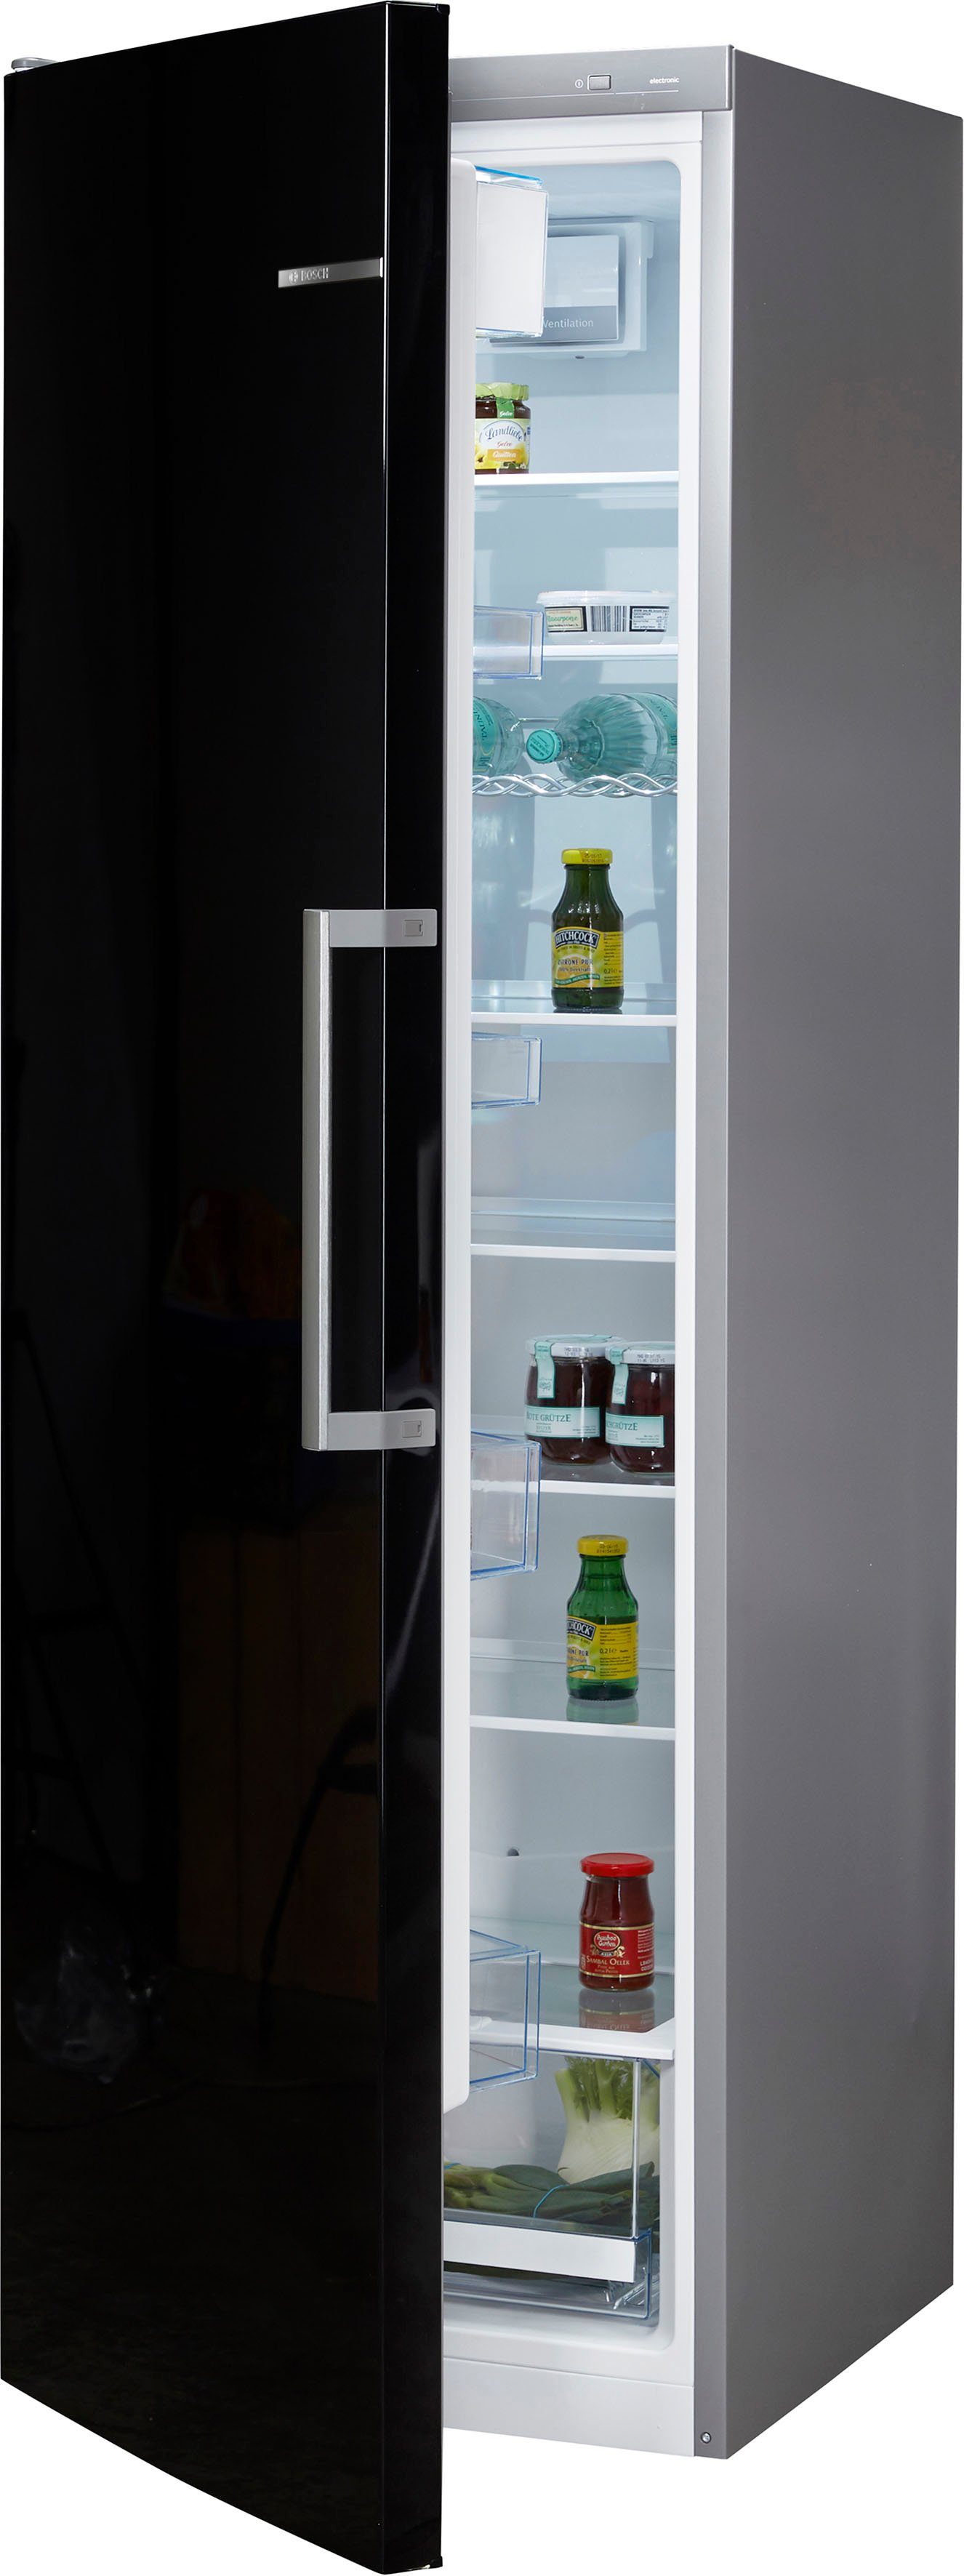 BOSCH Kühlschrank 4 KSV36VBEP, 186 cm hoch, 60 cm breit online kaufen | OTTO